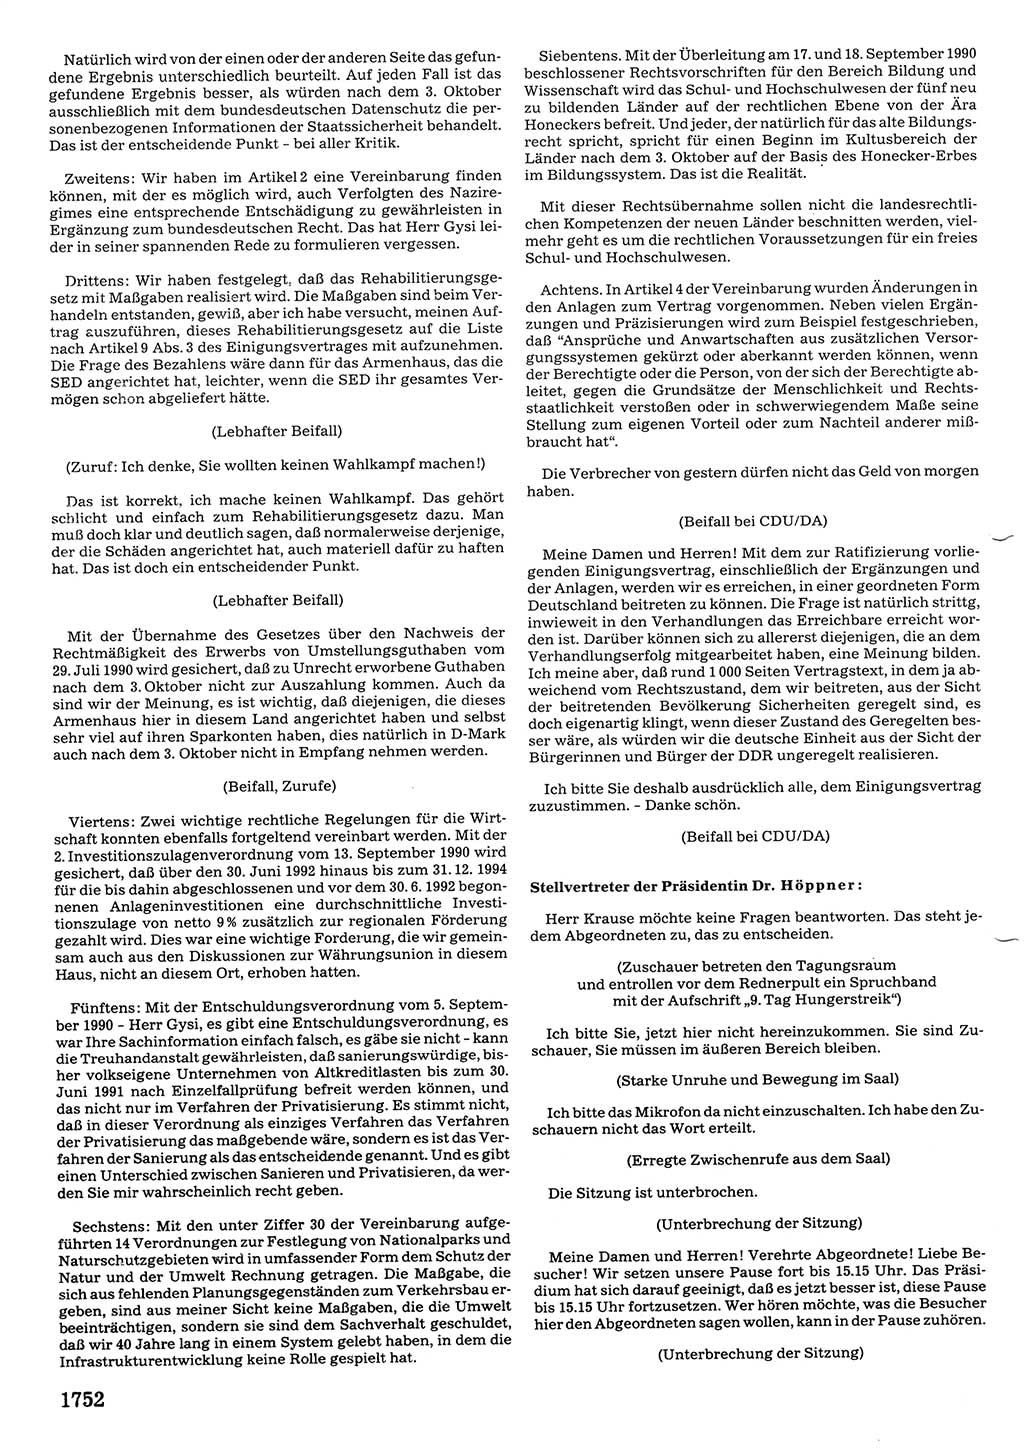 Tagungen der Volkskammer (VK) der Deutschen Demokratischen Republik (DDR), 10. Wahlperiode 1990, Seite 1752 (VK. DDR 10. WP. 1990, Prot. Tg. 1-38, 5.4.-2.10.1990, S. 1752)